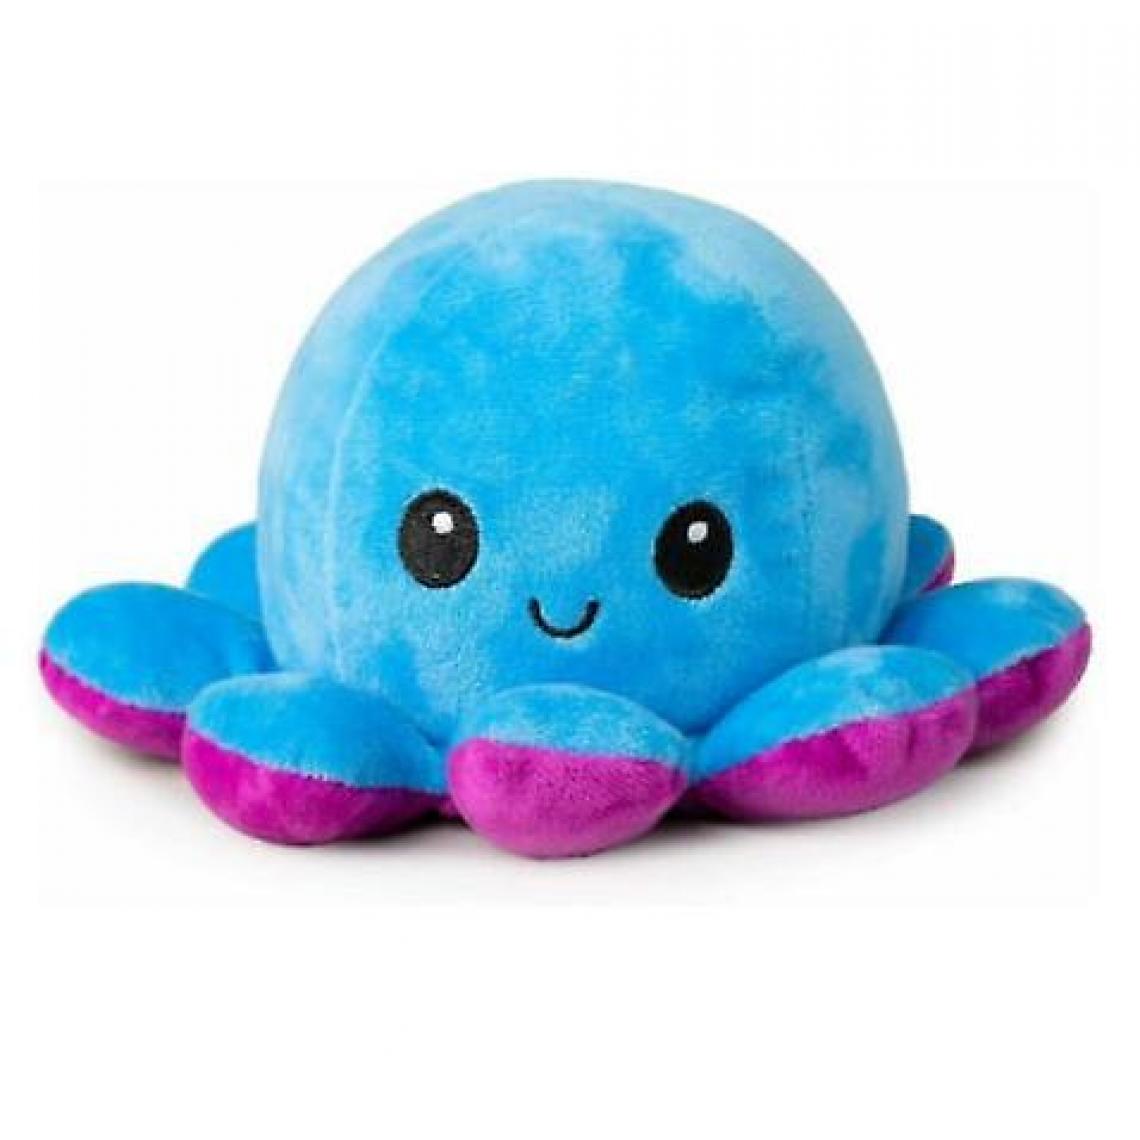 Universal - La pieuvre en peluche est réversible, mignonne, retournée, jouets doux, cadeaux, joie et tristesse (bleu et violet). - Doudous